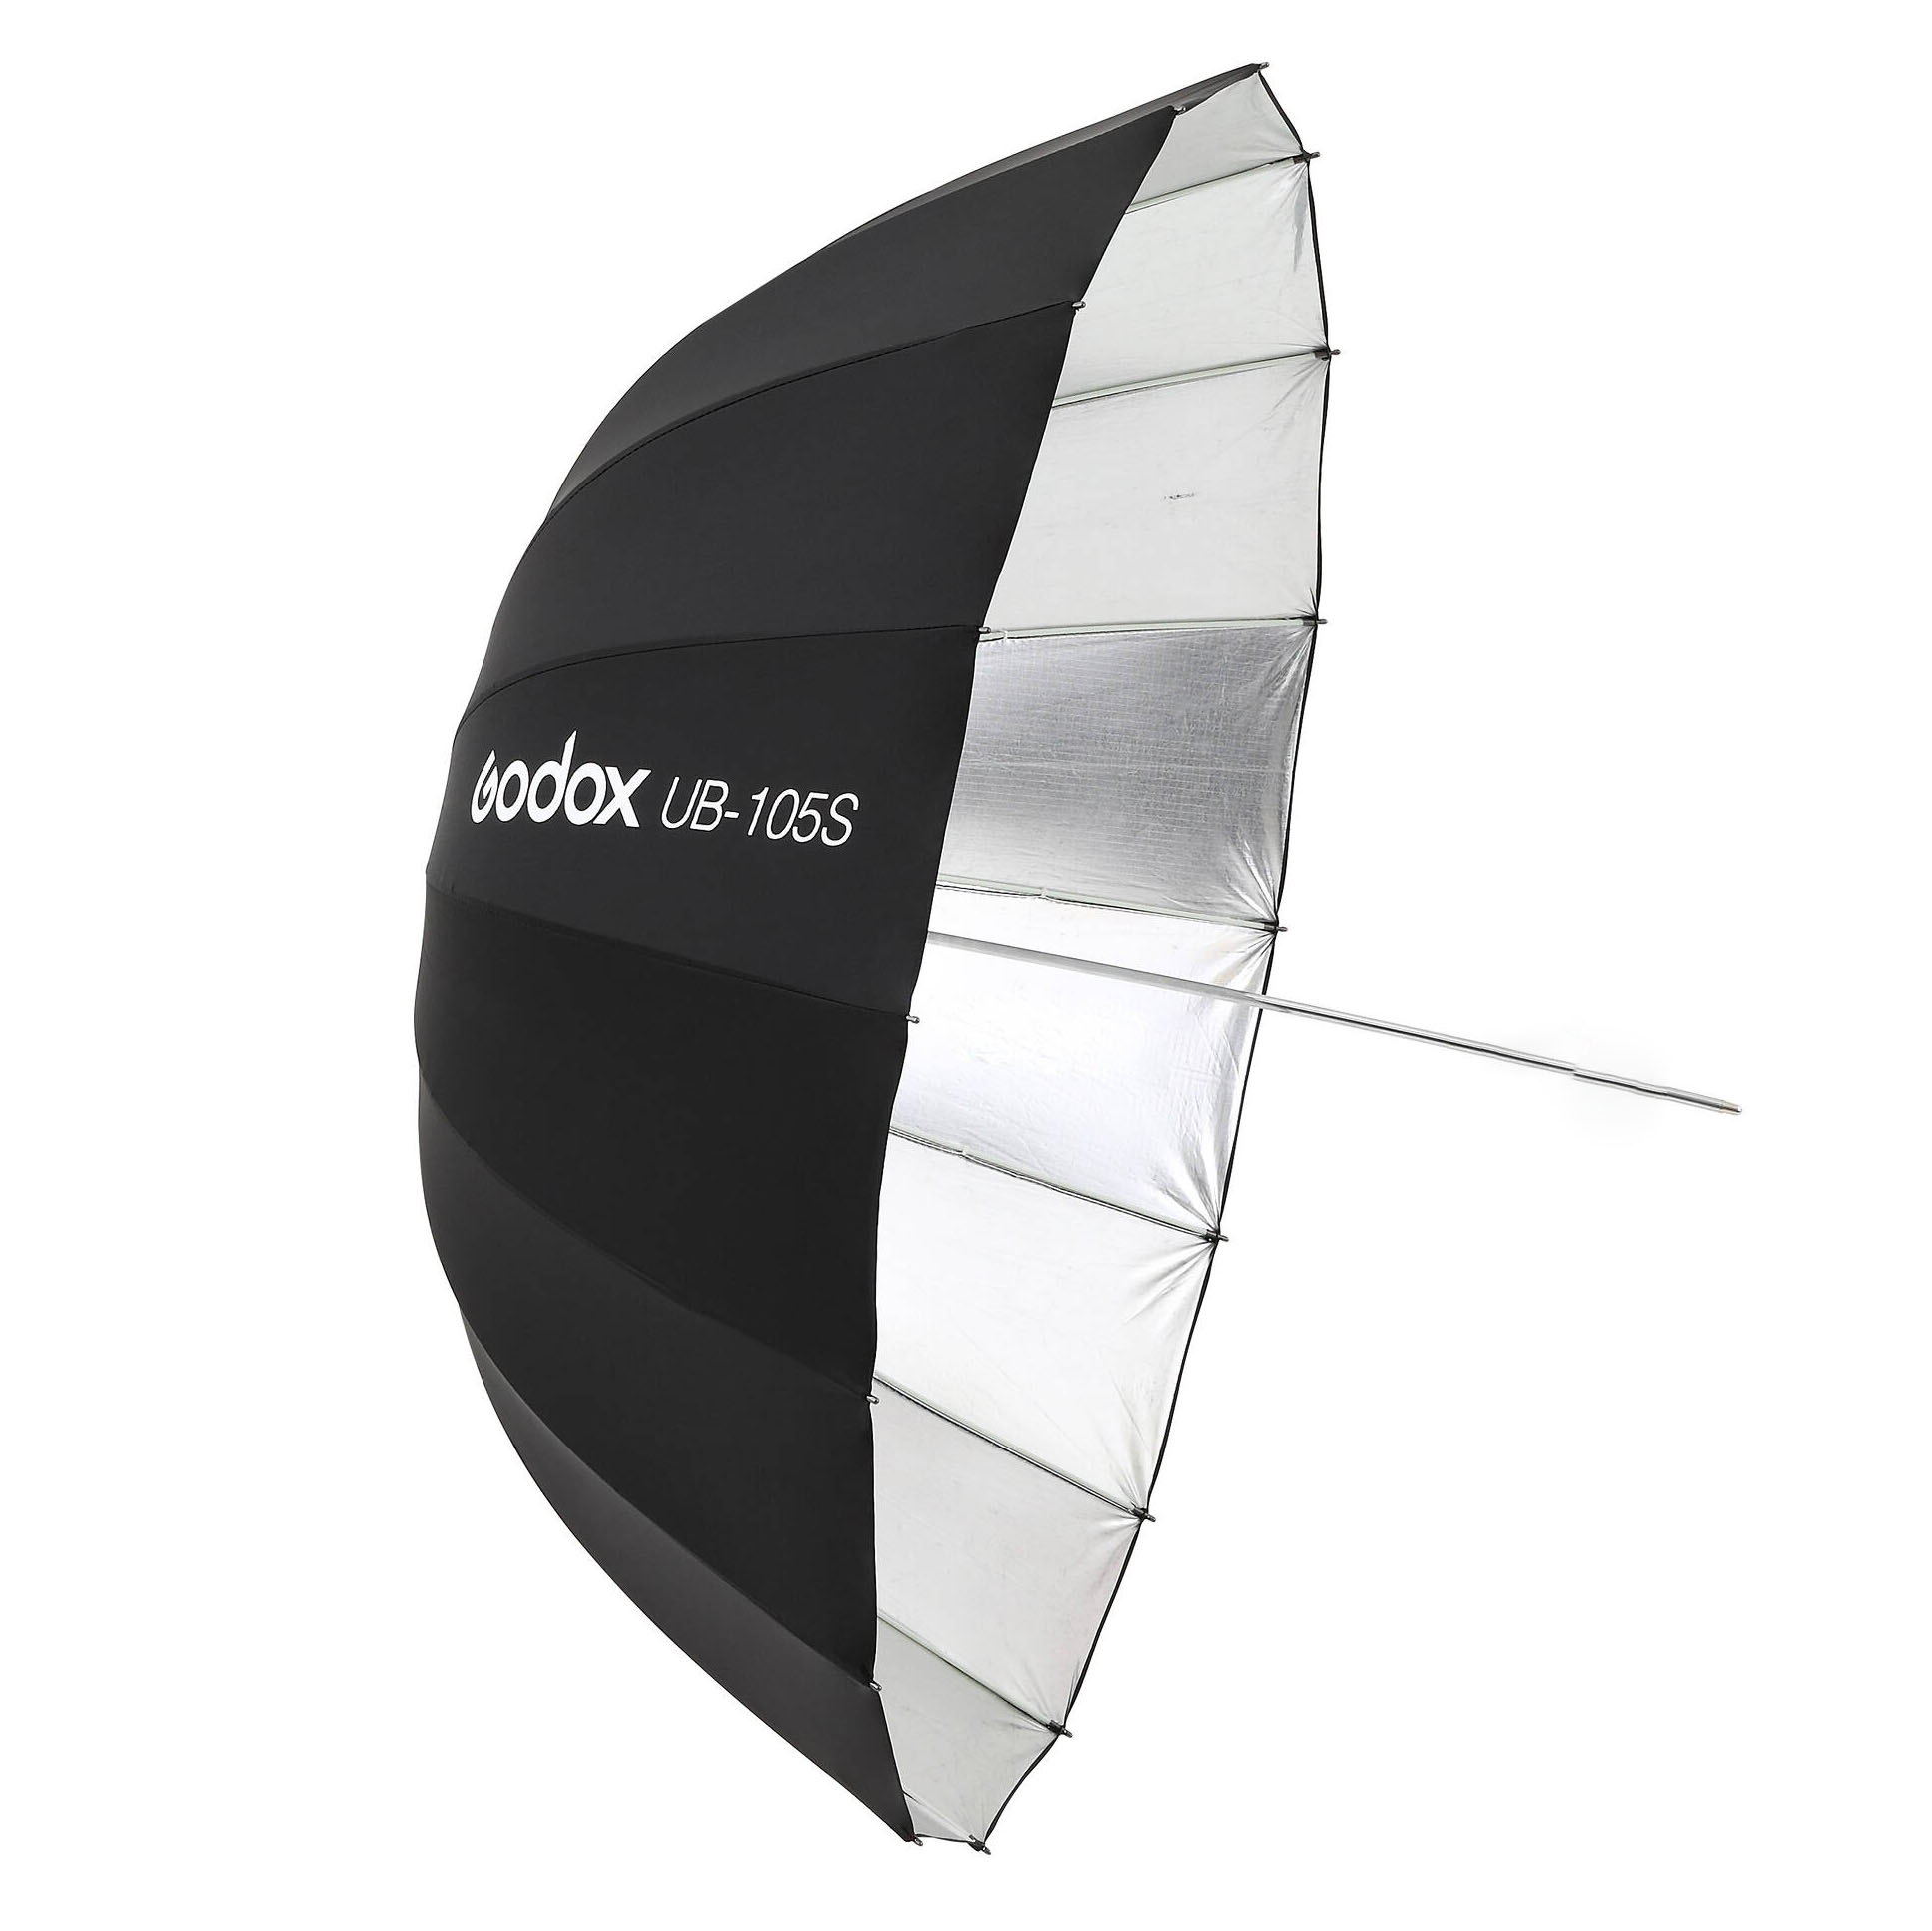 Reflector parabólico plateado tipo sombrilla Godox UB-105S, de 105cm.